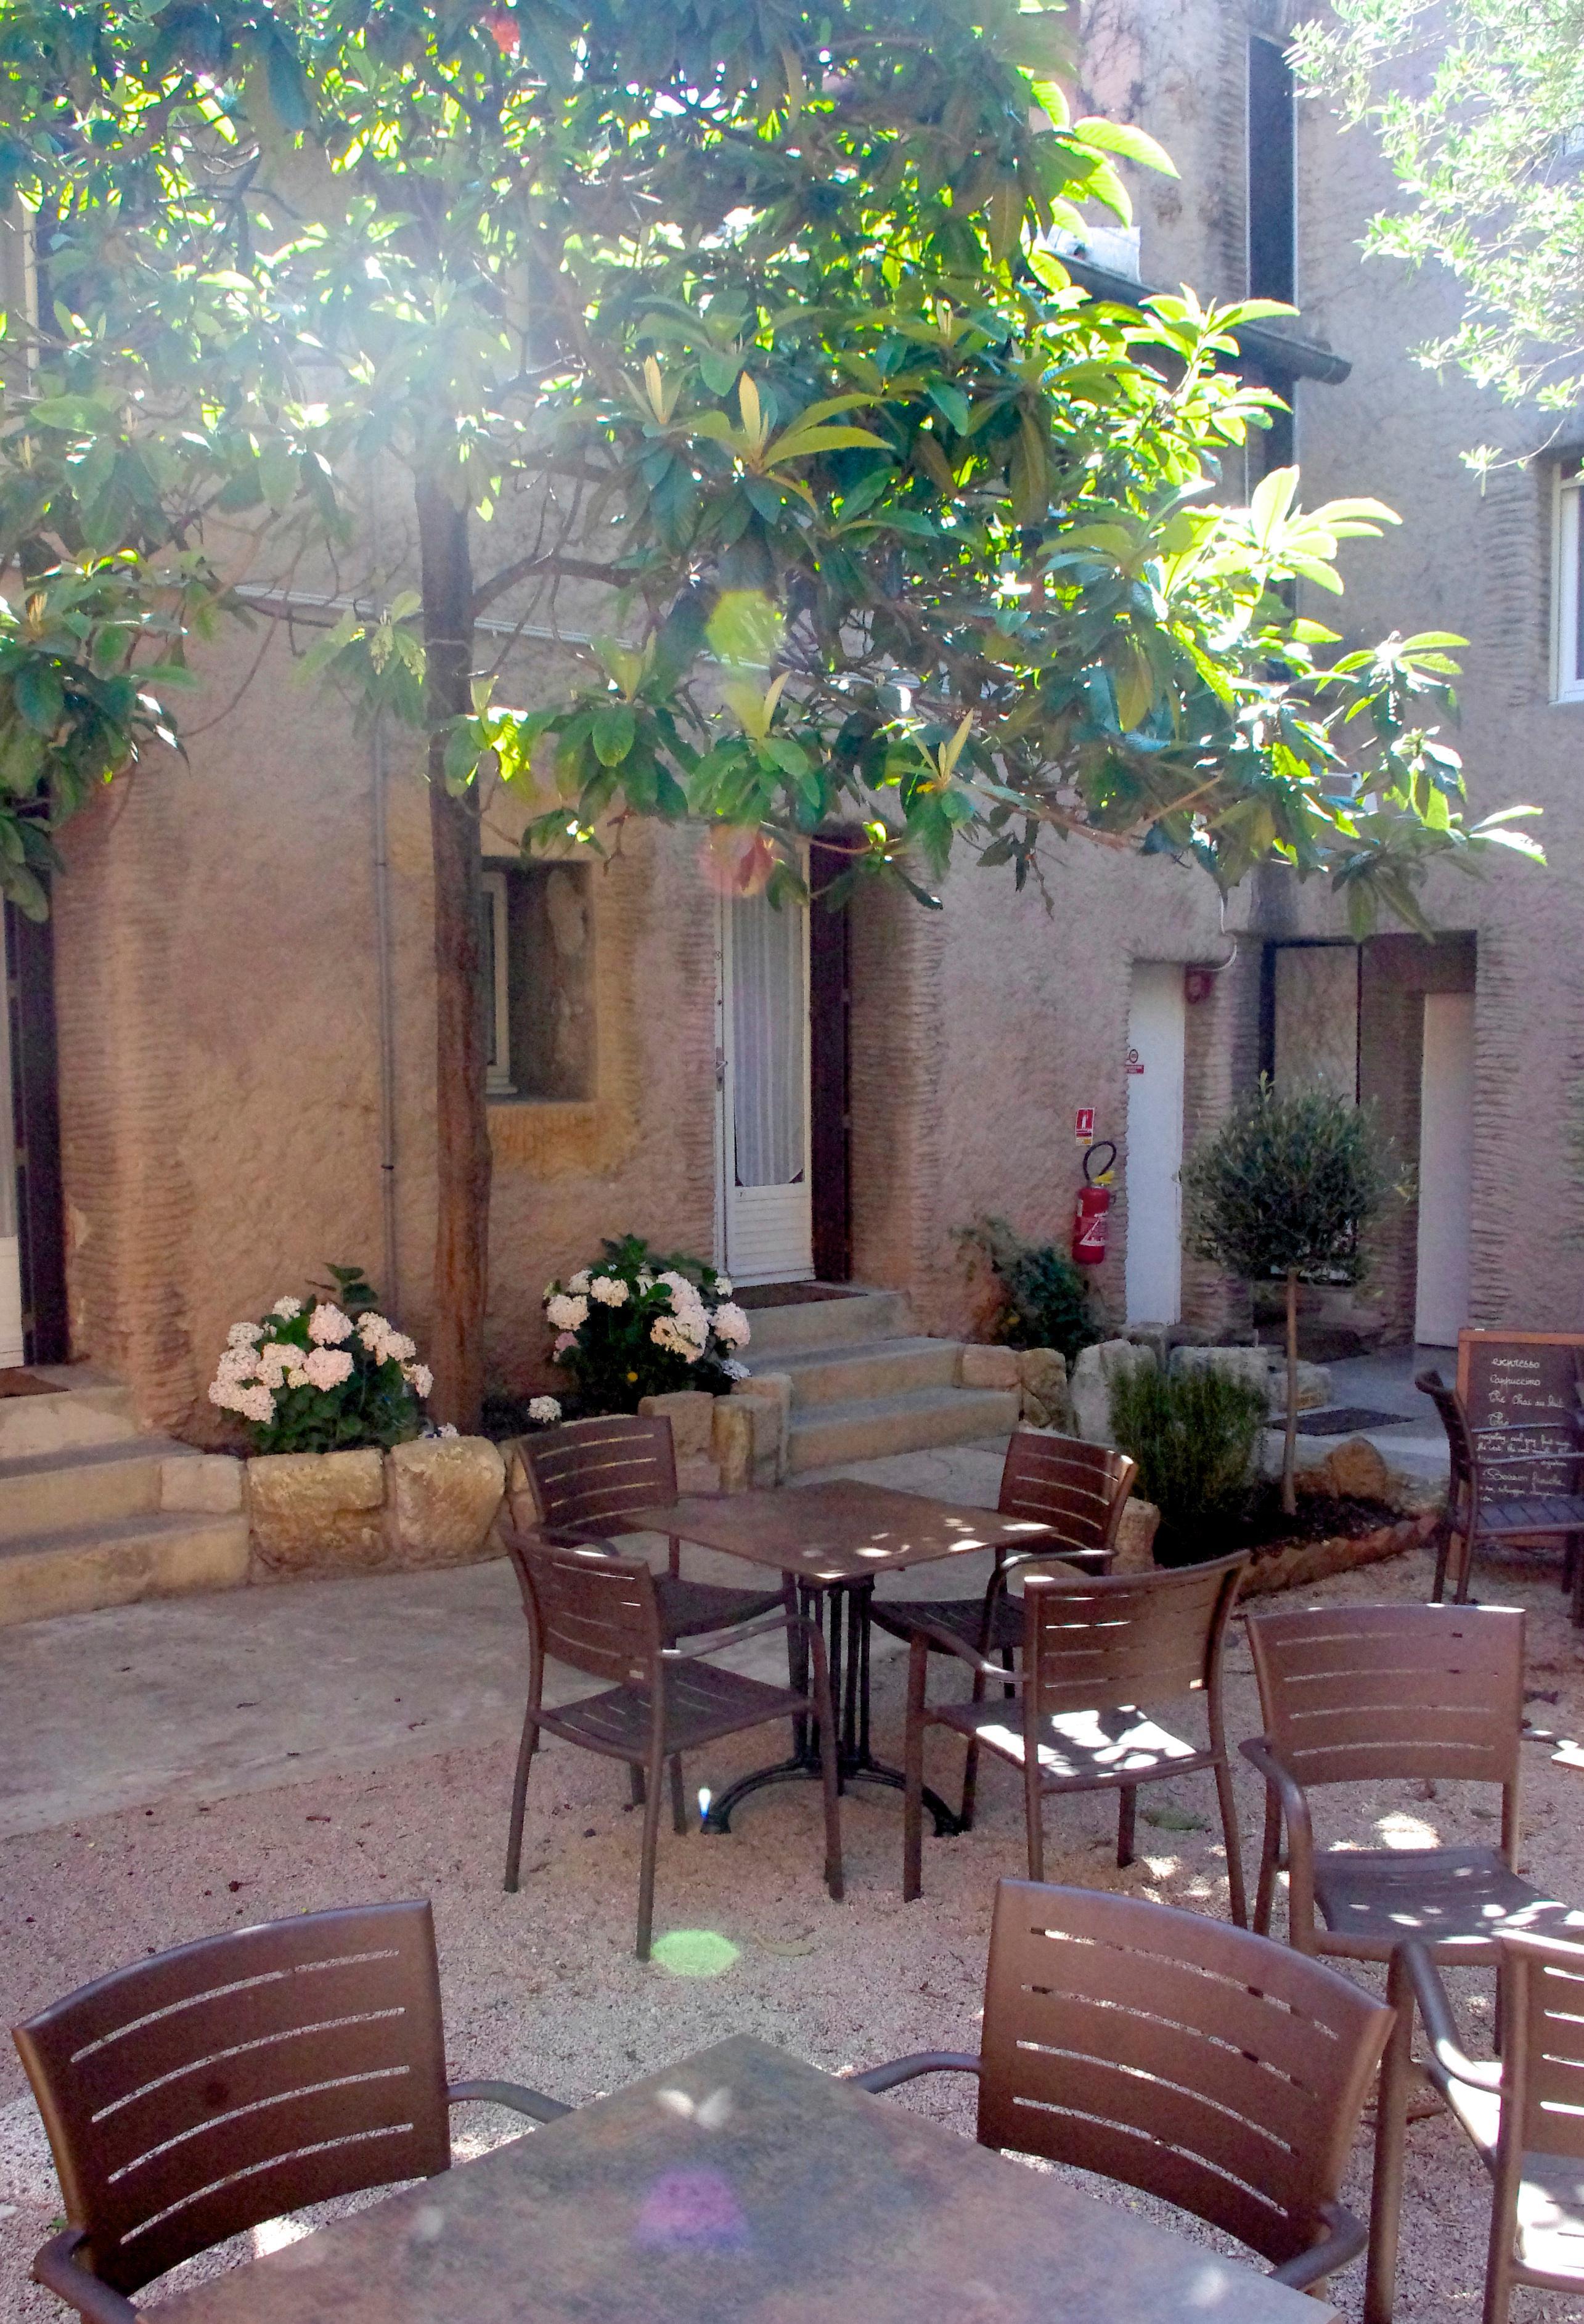 Le Magnan Hotel Avignon Exterior photo